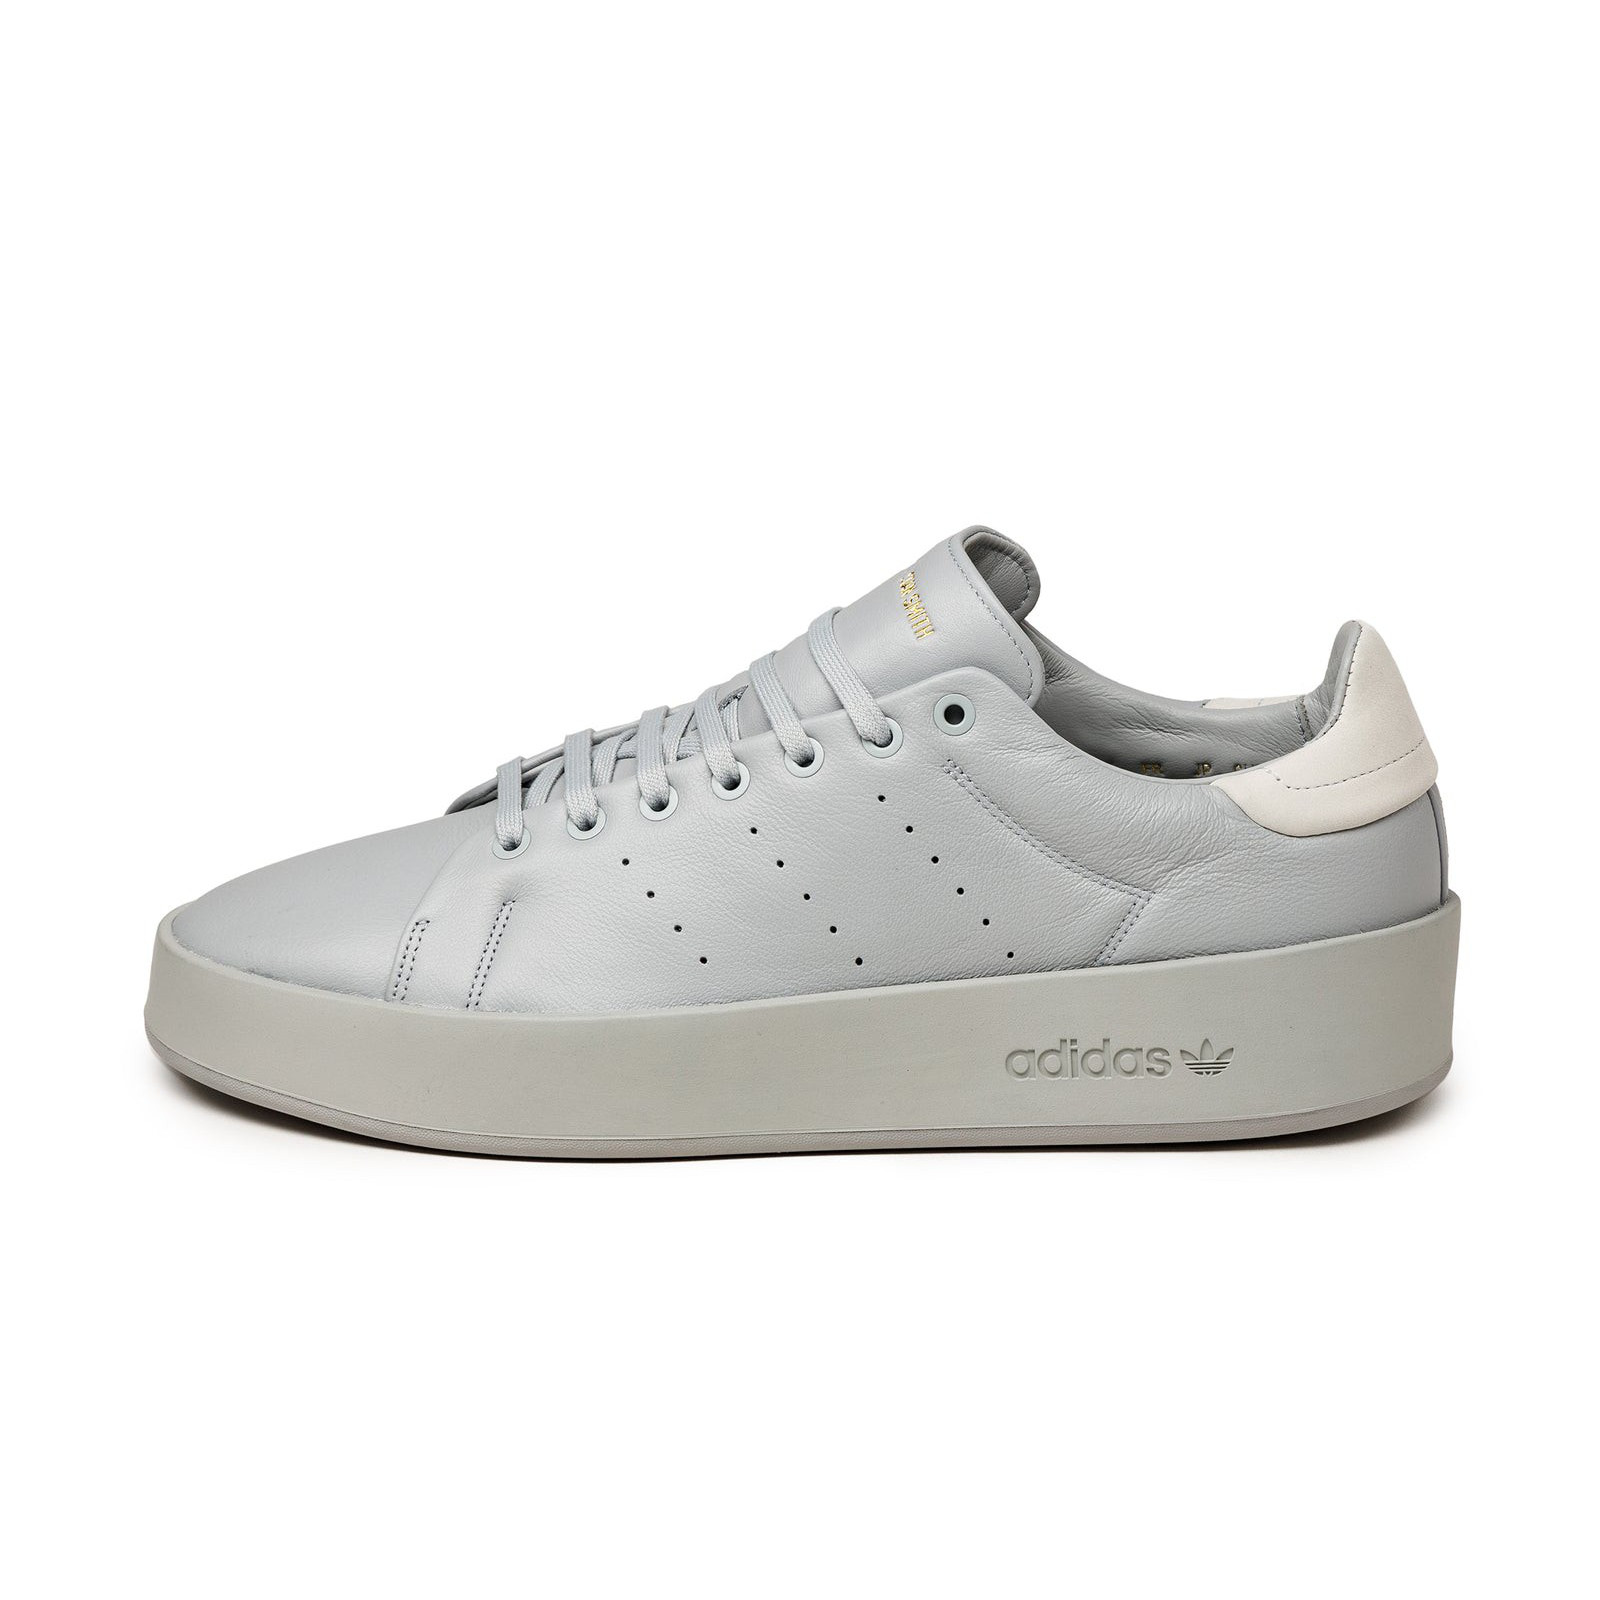 Adidas Stan Smith Recon
Pantone / Crystal White